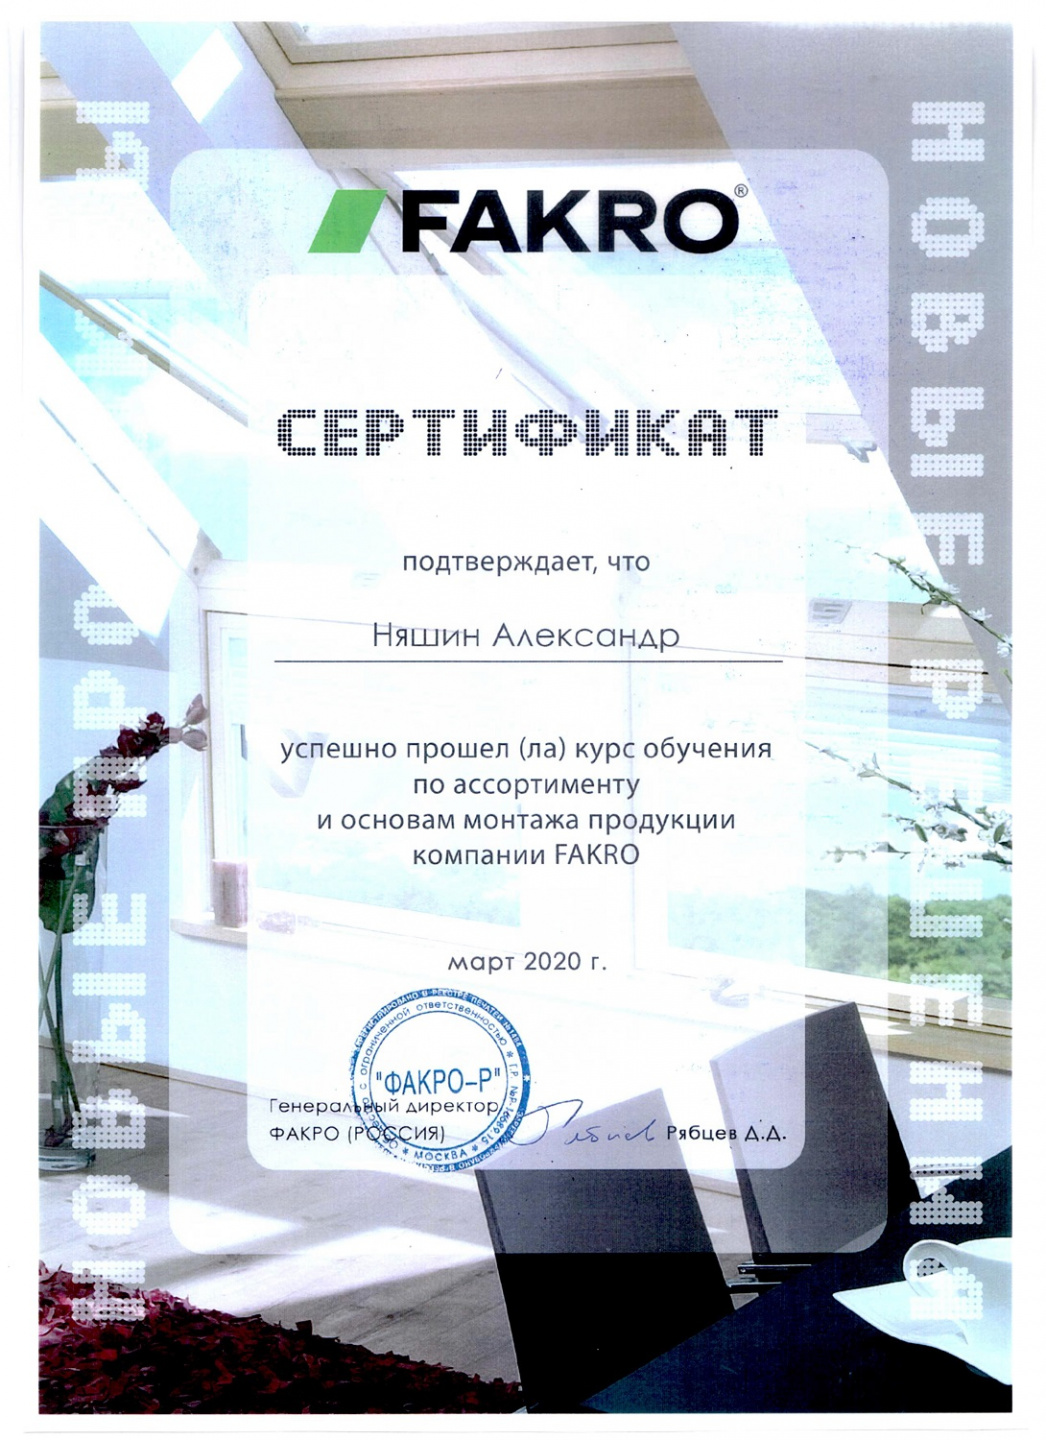 Производственное объединение “Эталон” обучающий семинар Fakro 5 марта 2020 года